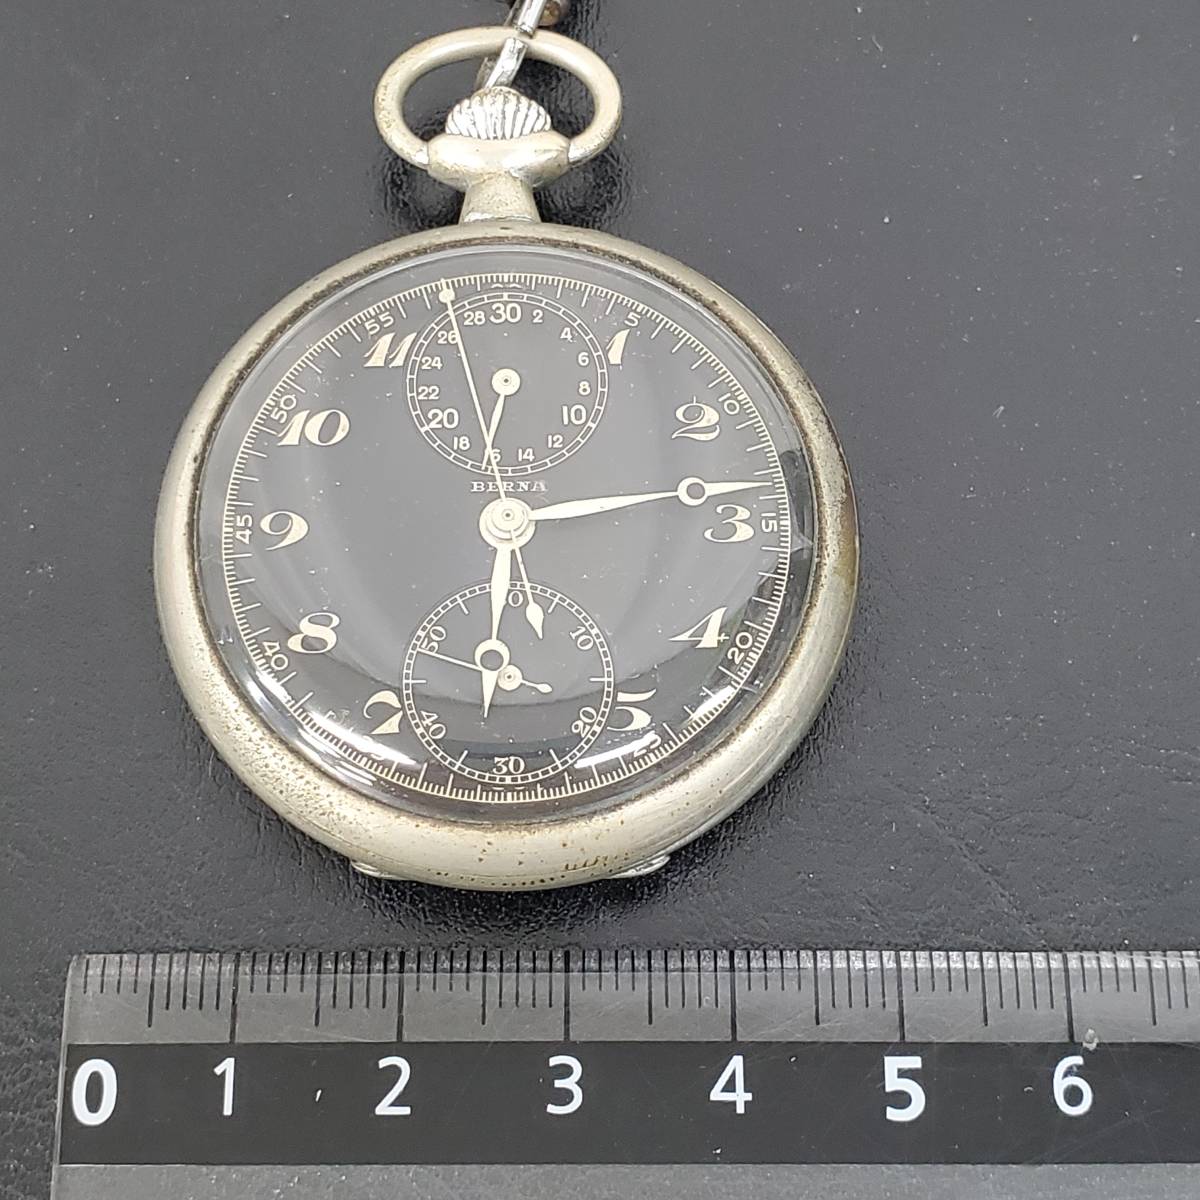 1108-212* редкий BERNAbe luna карманные часы хронограф механический завод античный часы работа товар работоспособность не проверялась Junk подлинная вещь 